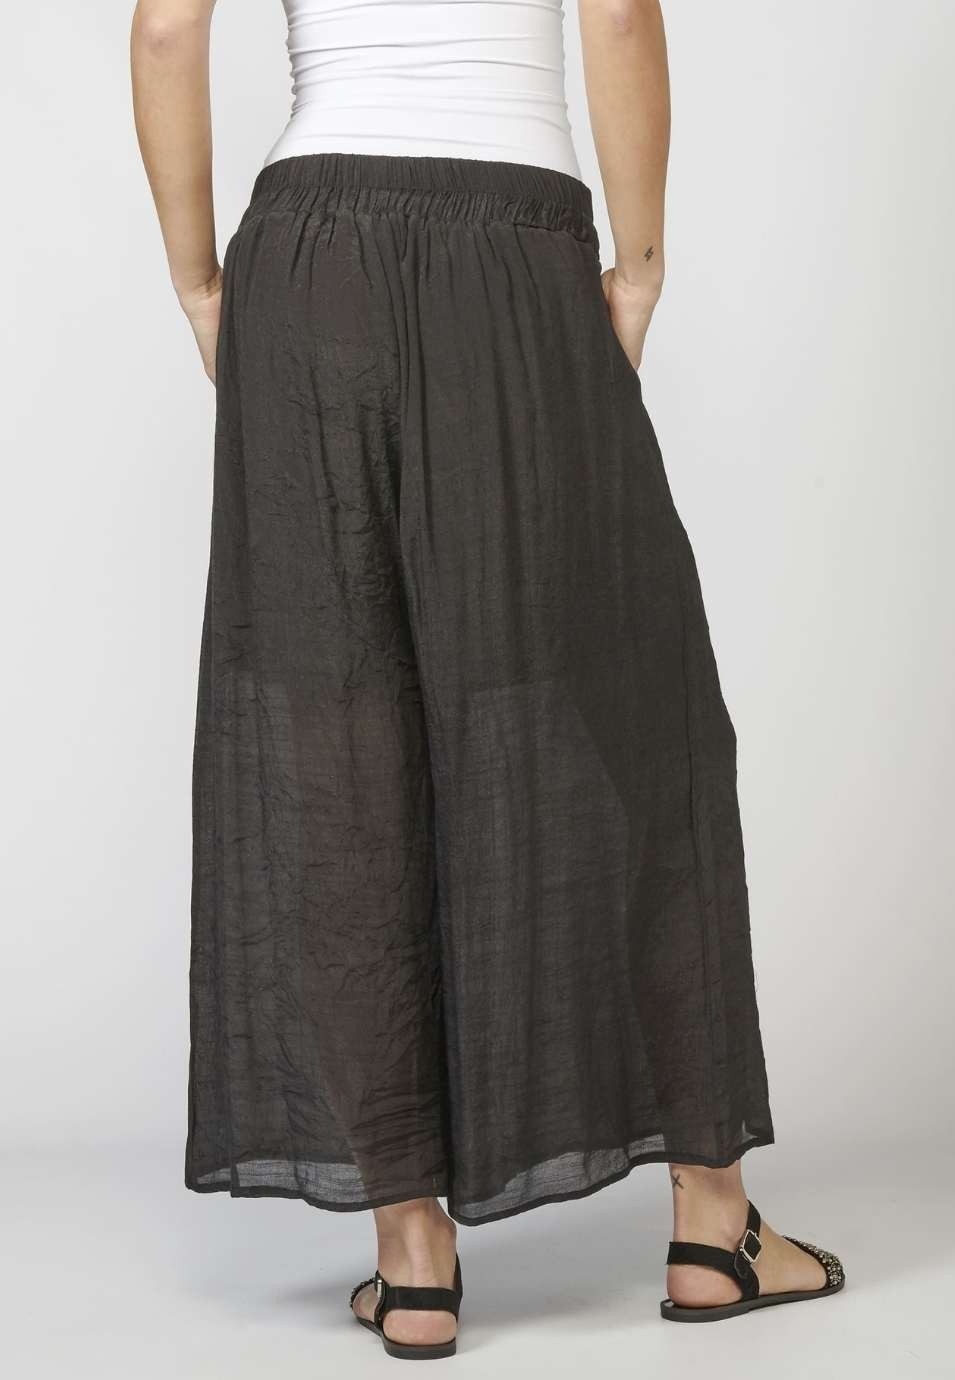 Pantalon long élastique pour femme avec ceinture et détail brodé ethnique de couleur noire 2